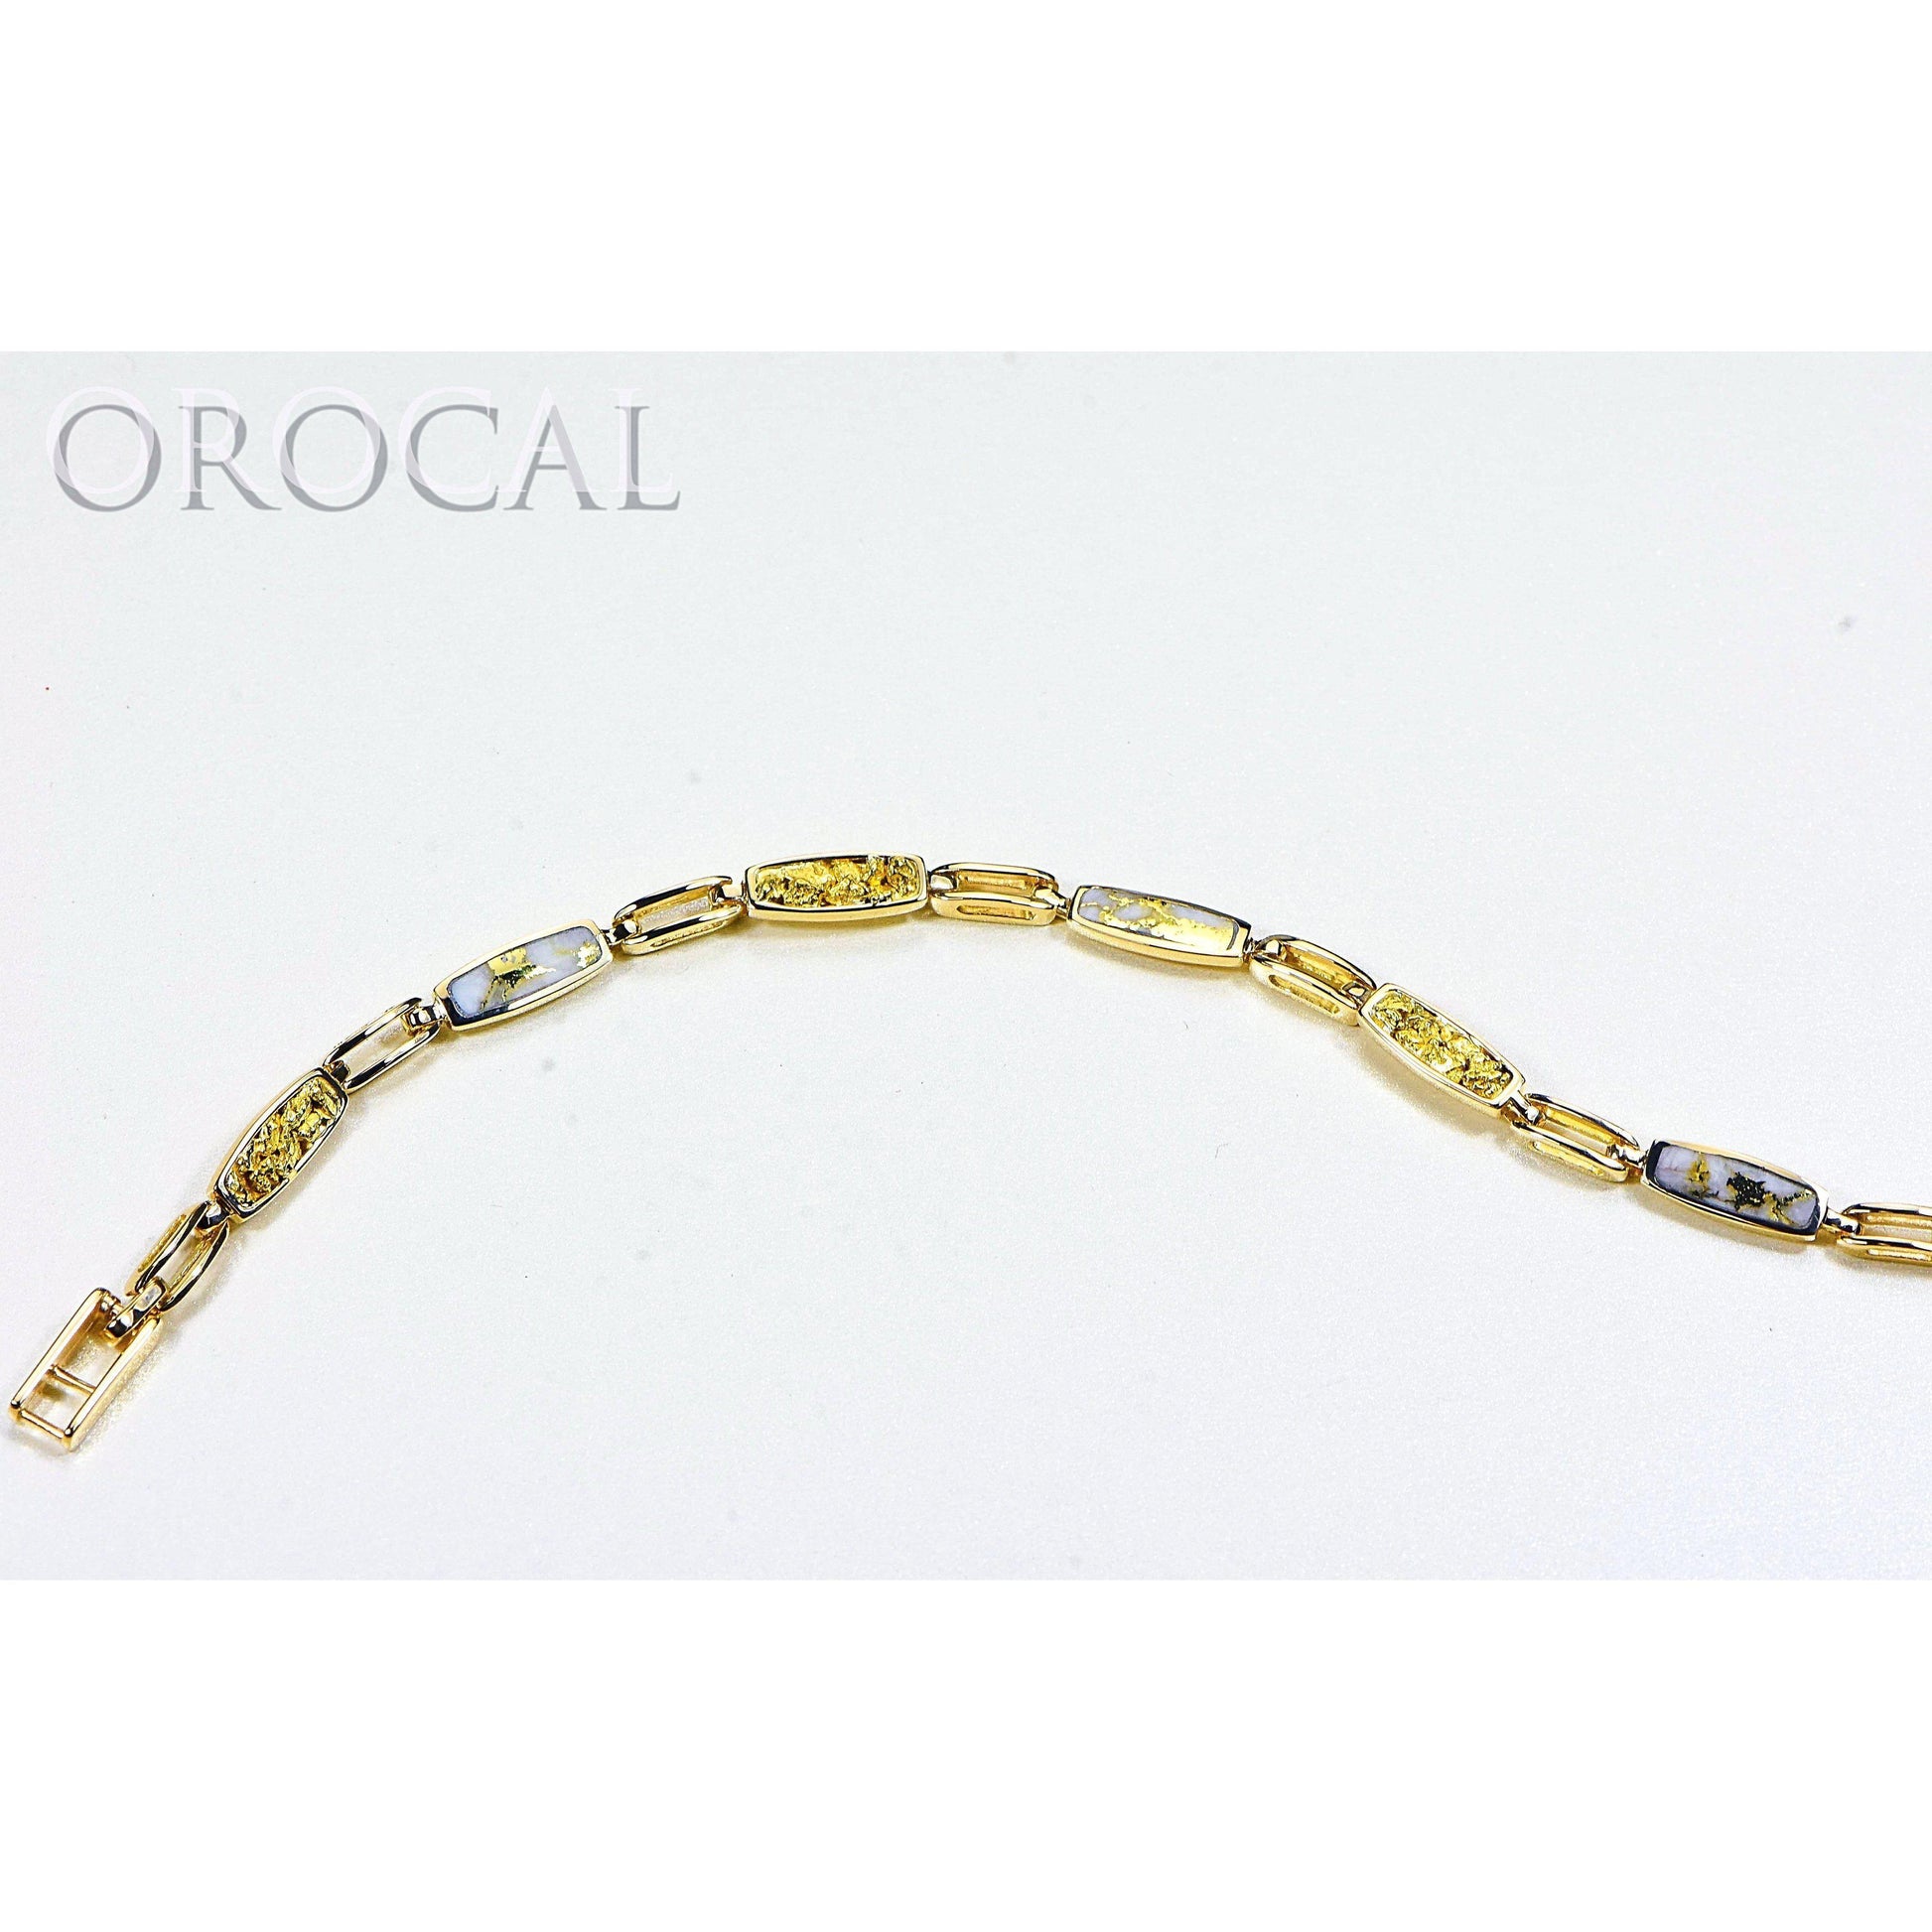 Orocal Gold Quartz Bracelet BDLOV5MMNQC59-Destination Gold Detectors